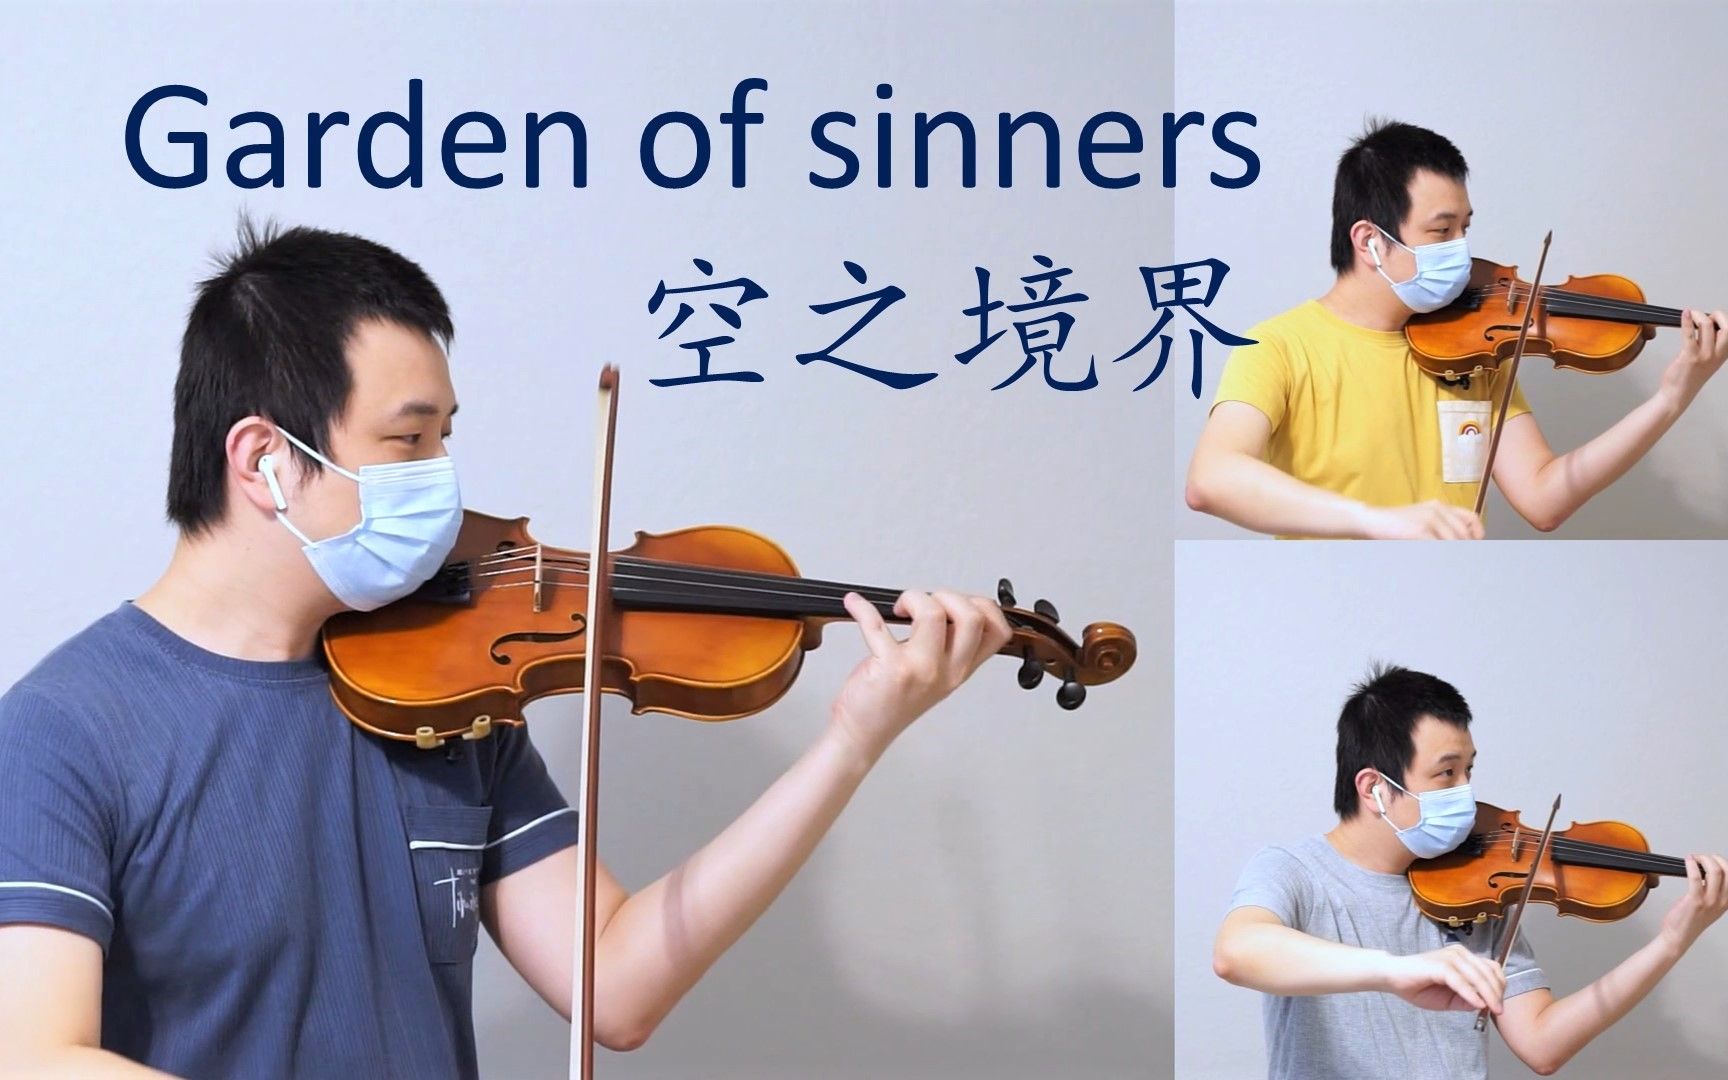 【小提琴】the garden of sinners - 俯瞰风景 M13 - 空之境界